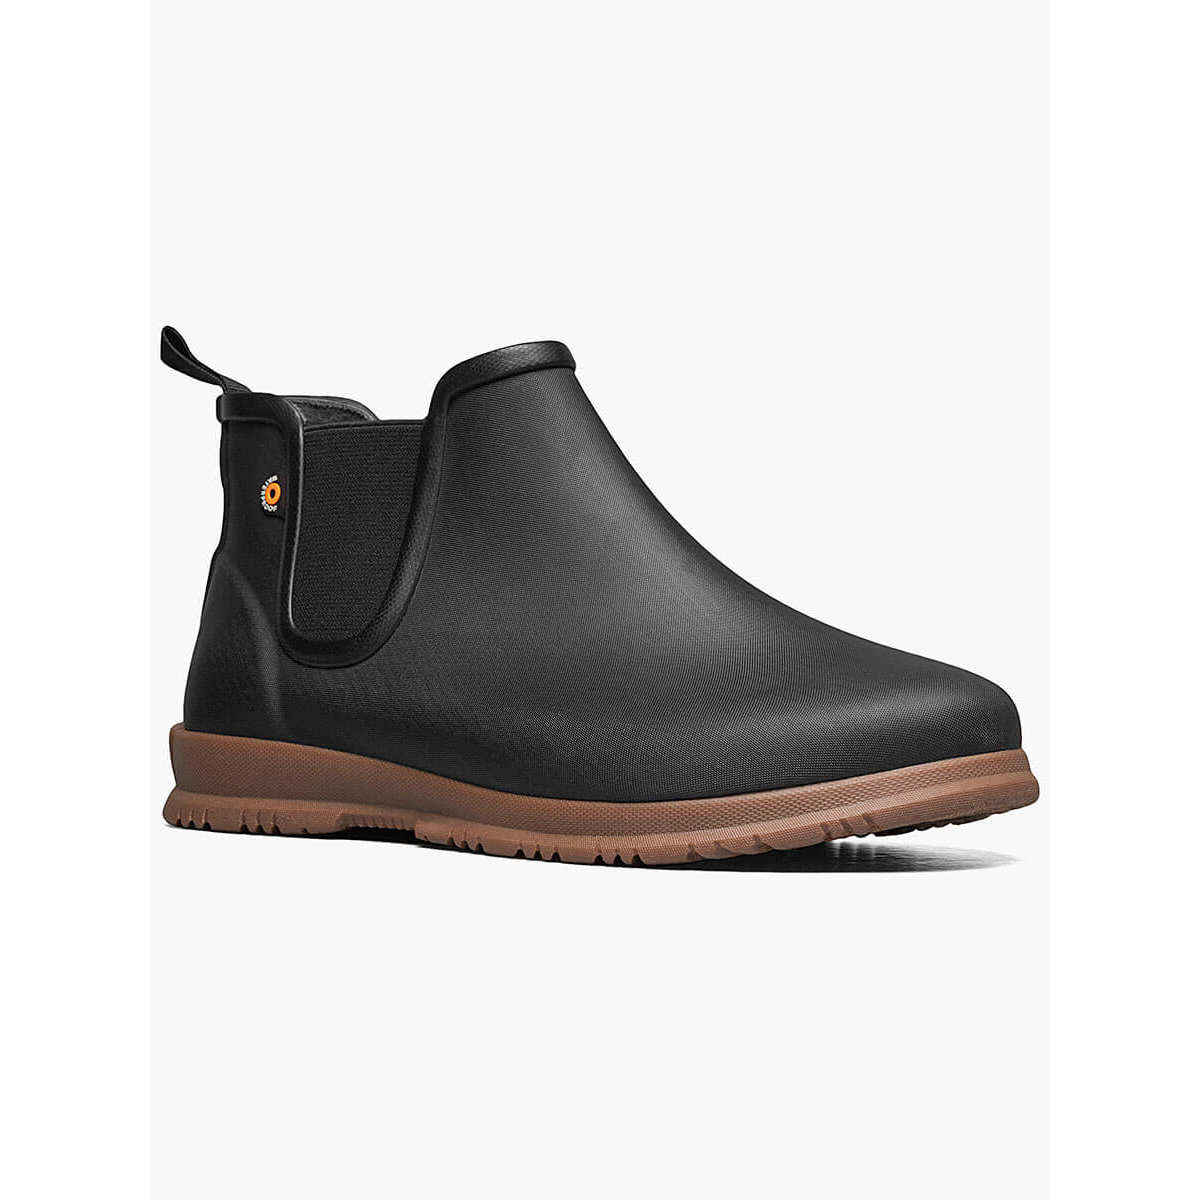 BOGS Women's Sweetpea Waterproof Slip On Rain Boots Black- 72198-001 - BLACK, 6